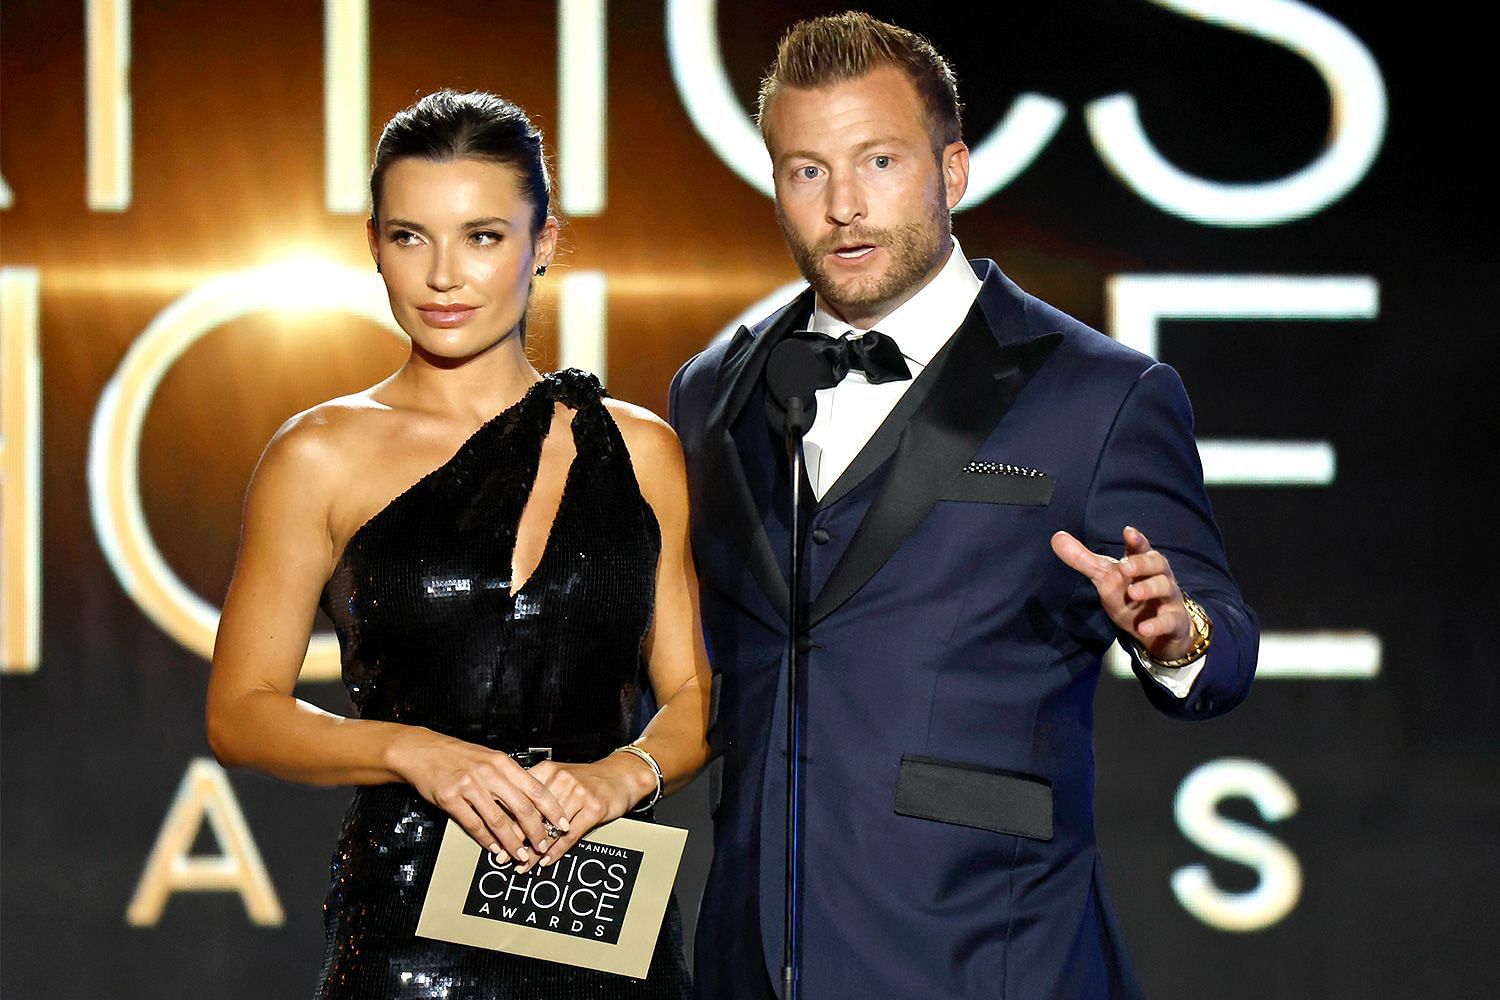 Sean McVay and wife Veronika Khomyn at Critics Choice Awards.